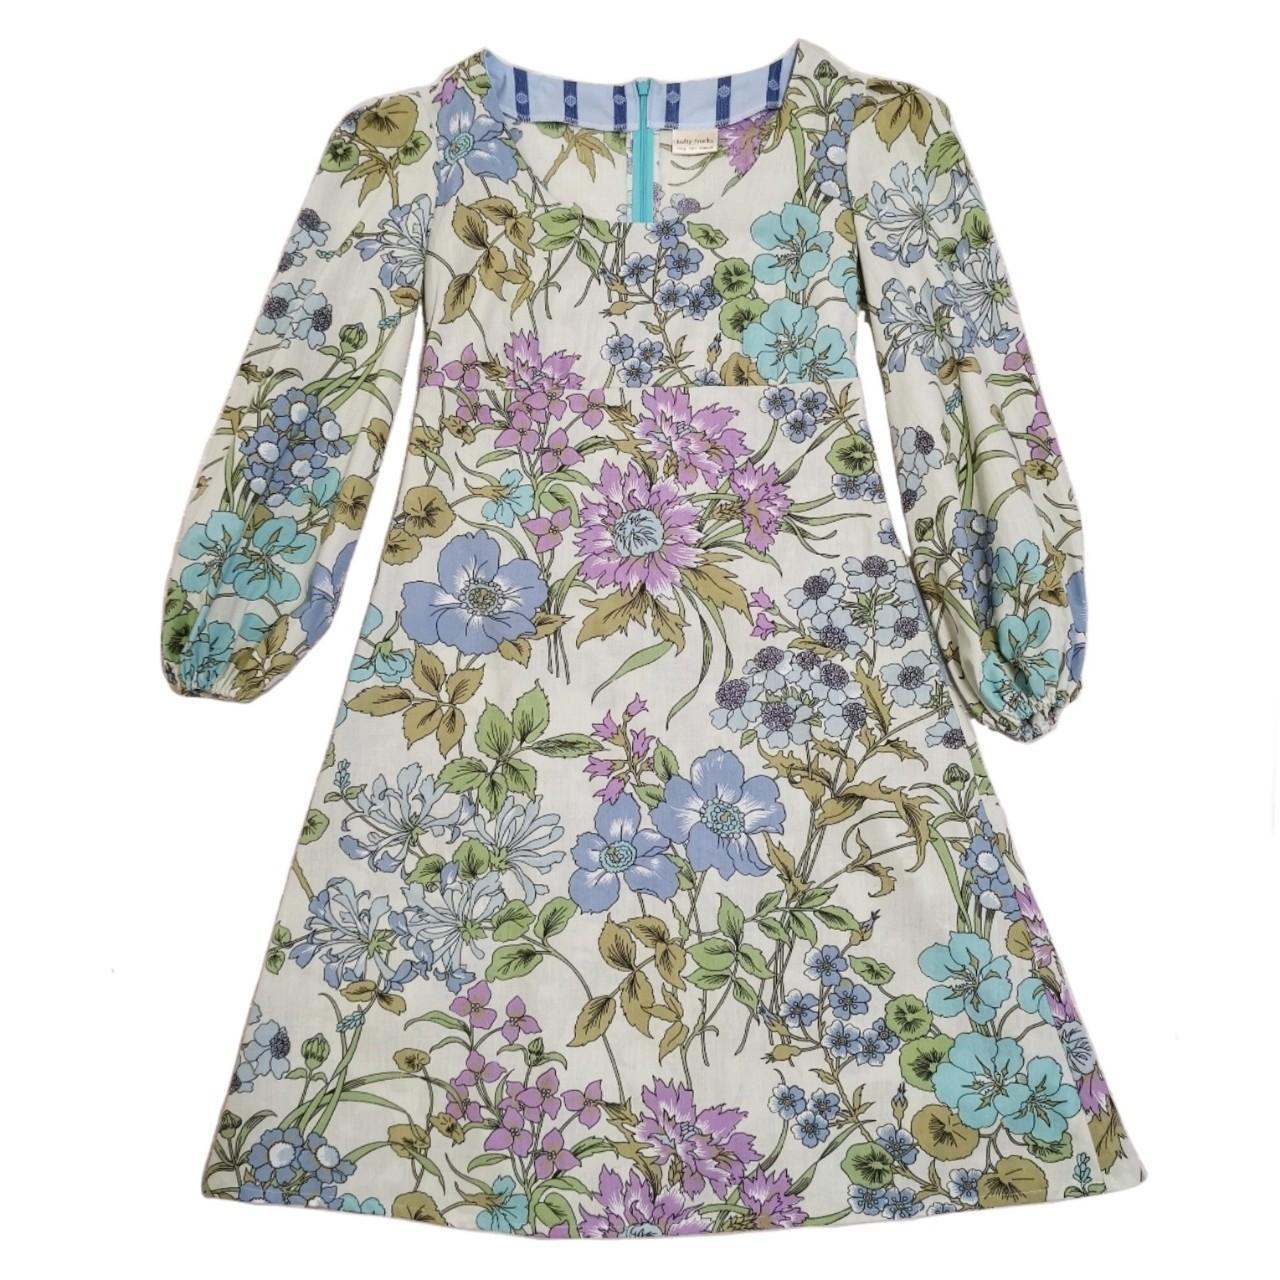 Lofty Frocks Handmade Vintage & Ethical Floral Dress... - Depop